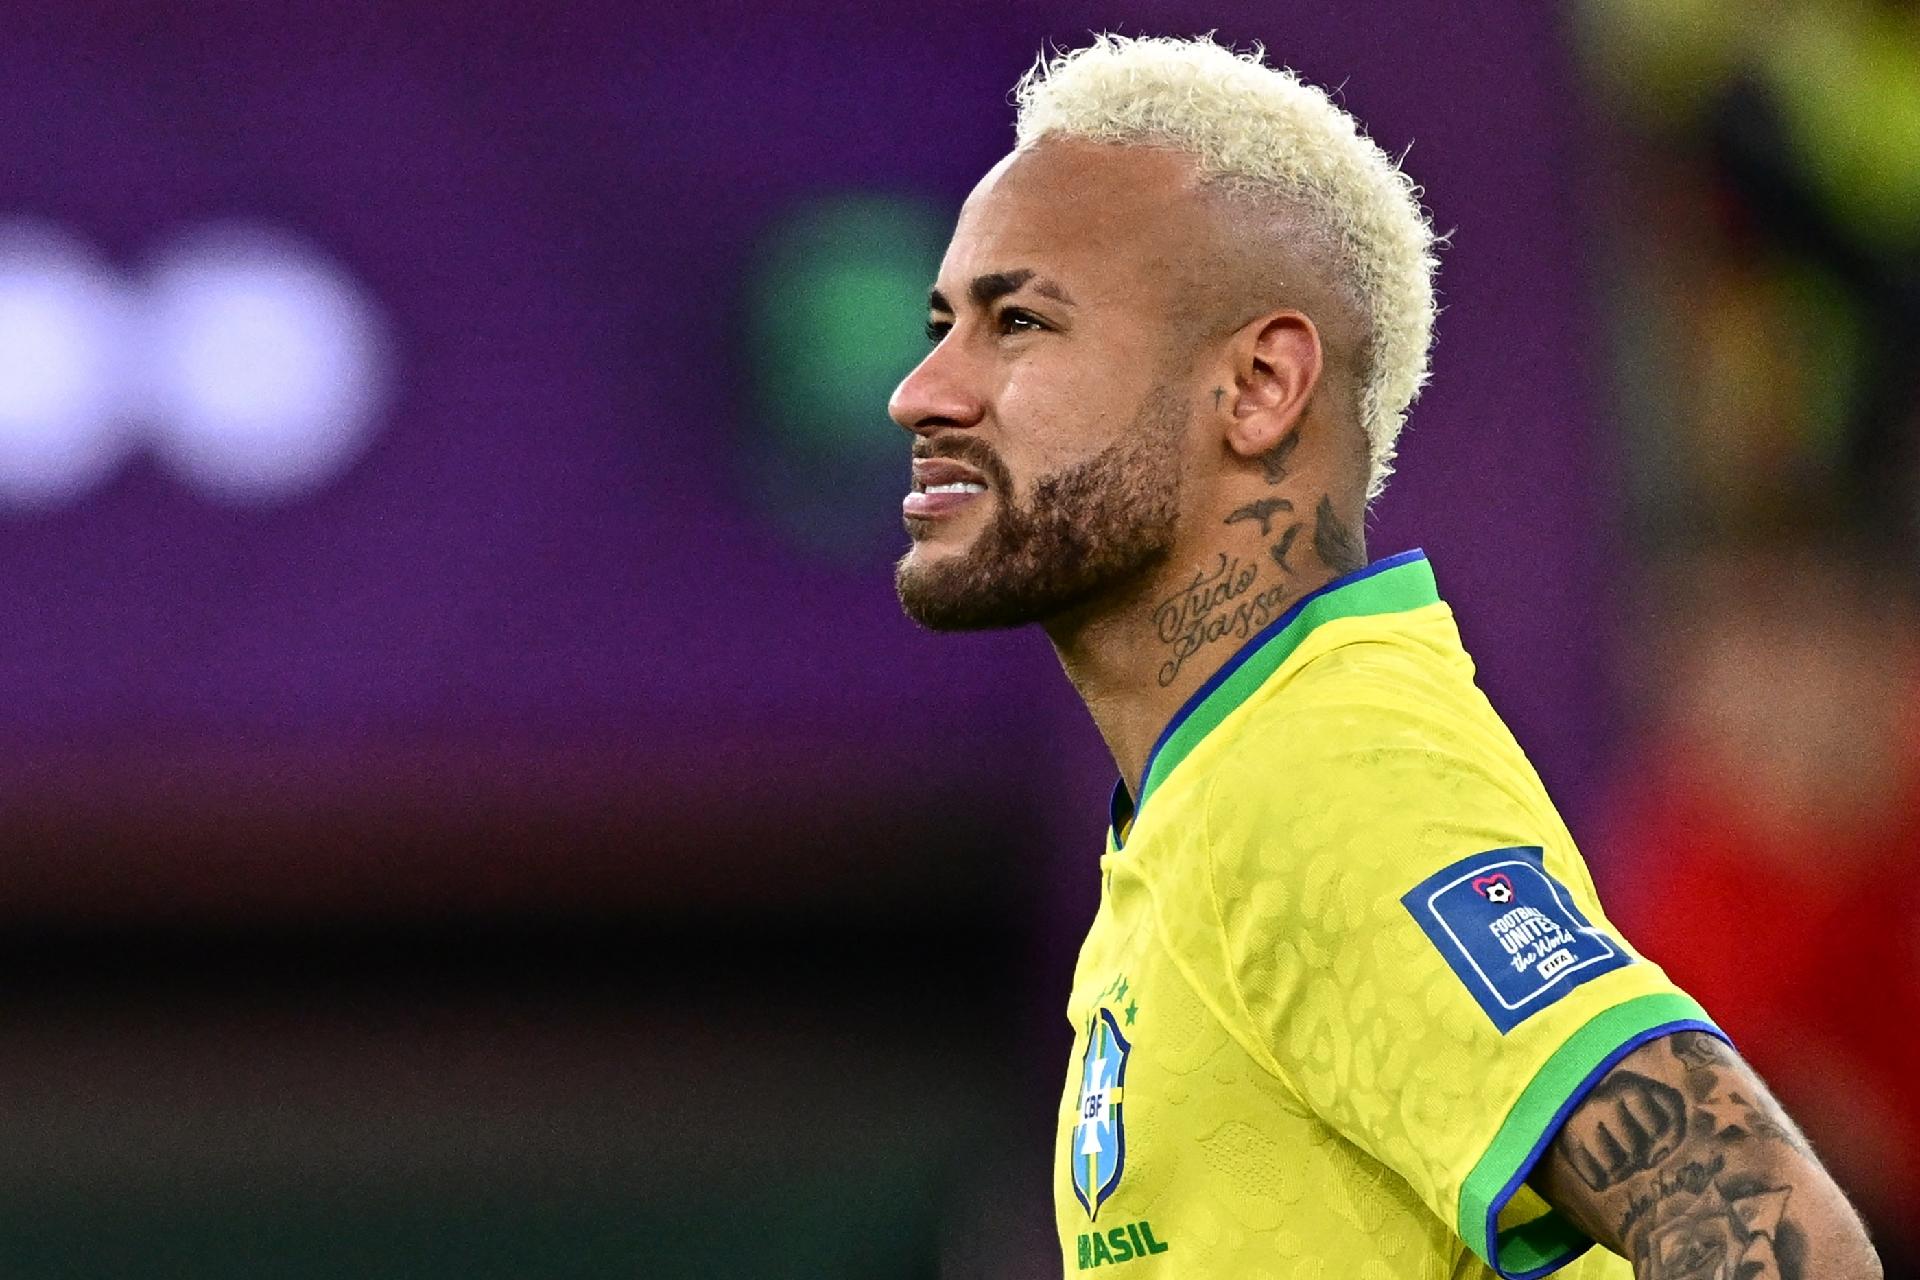 Perfil do Rei parabeniza Neymar: 'Pelé está te aplaudindo